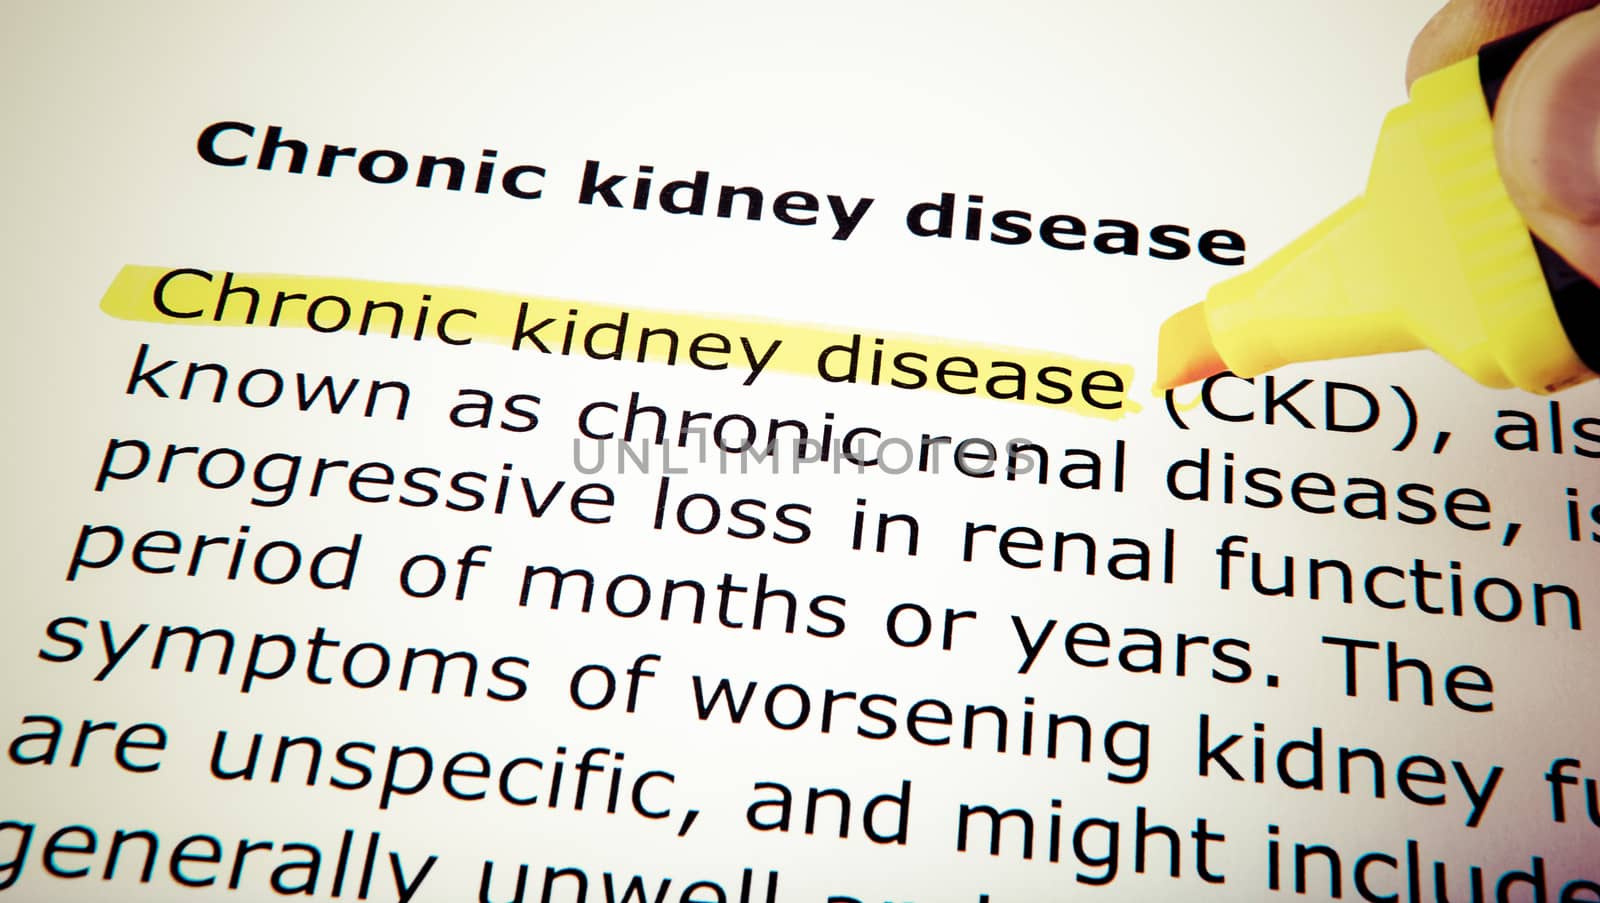 Chronic kidney disease by nenov